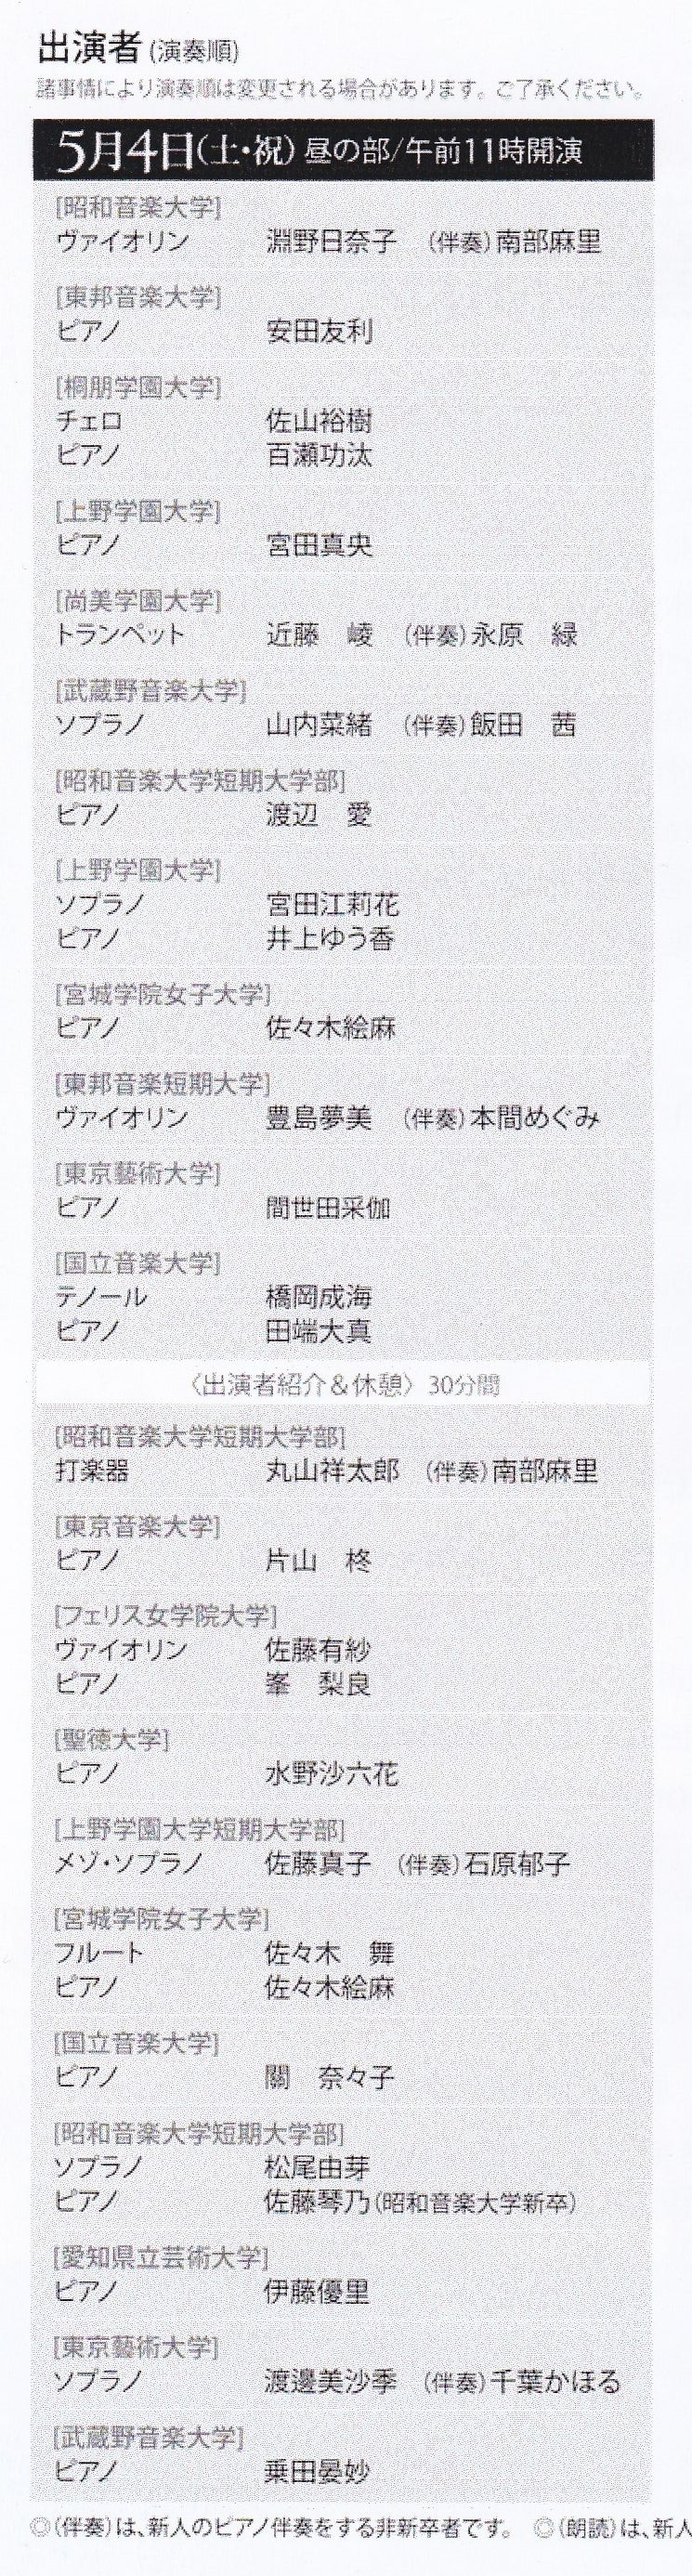 会 演奏 読売 新人 5/4 (水・祝)